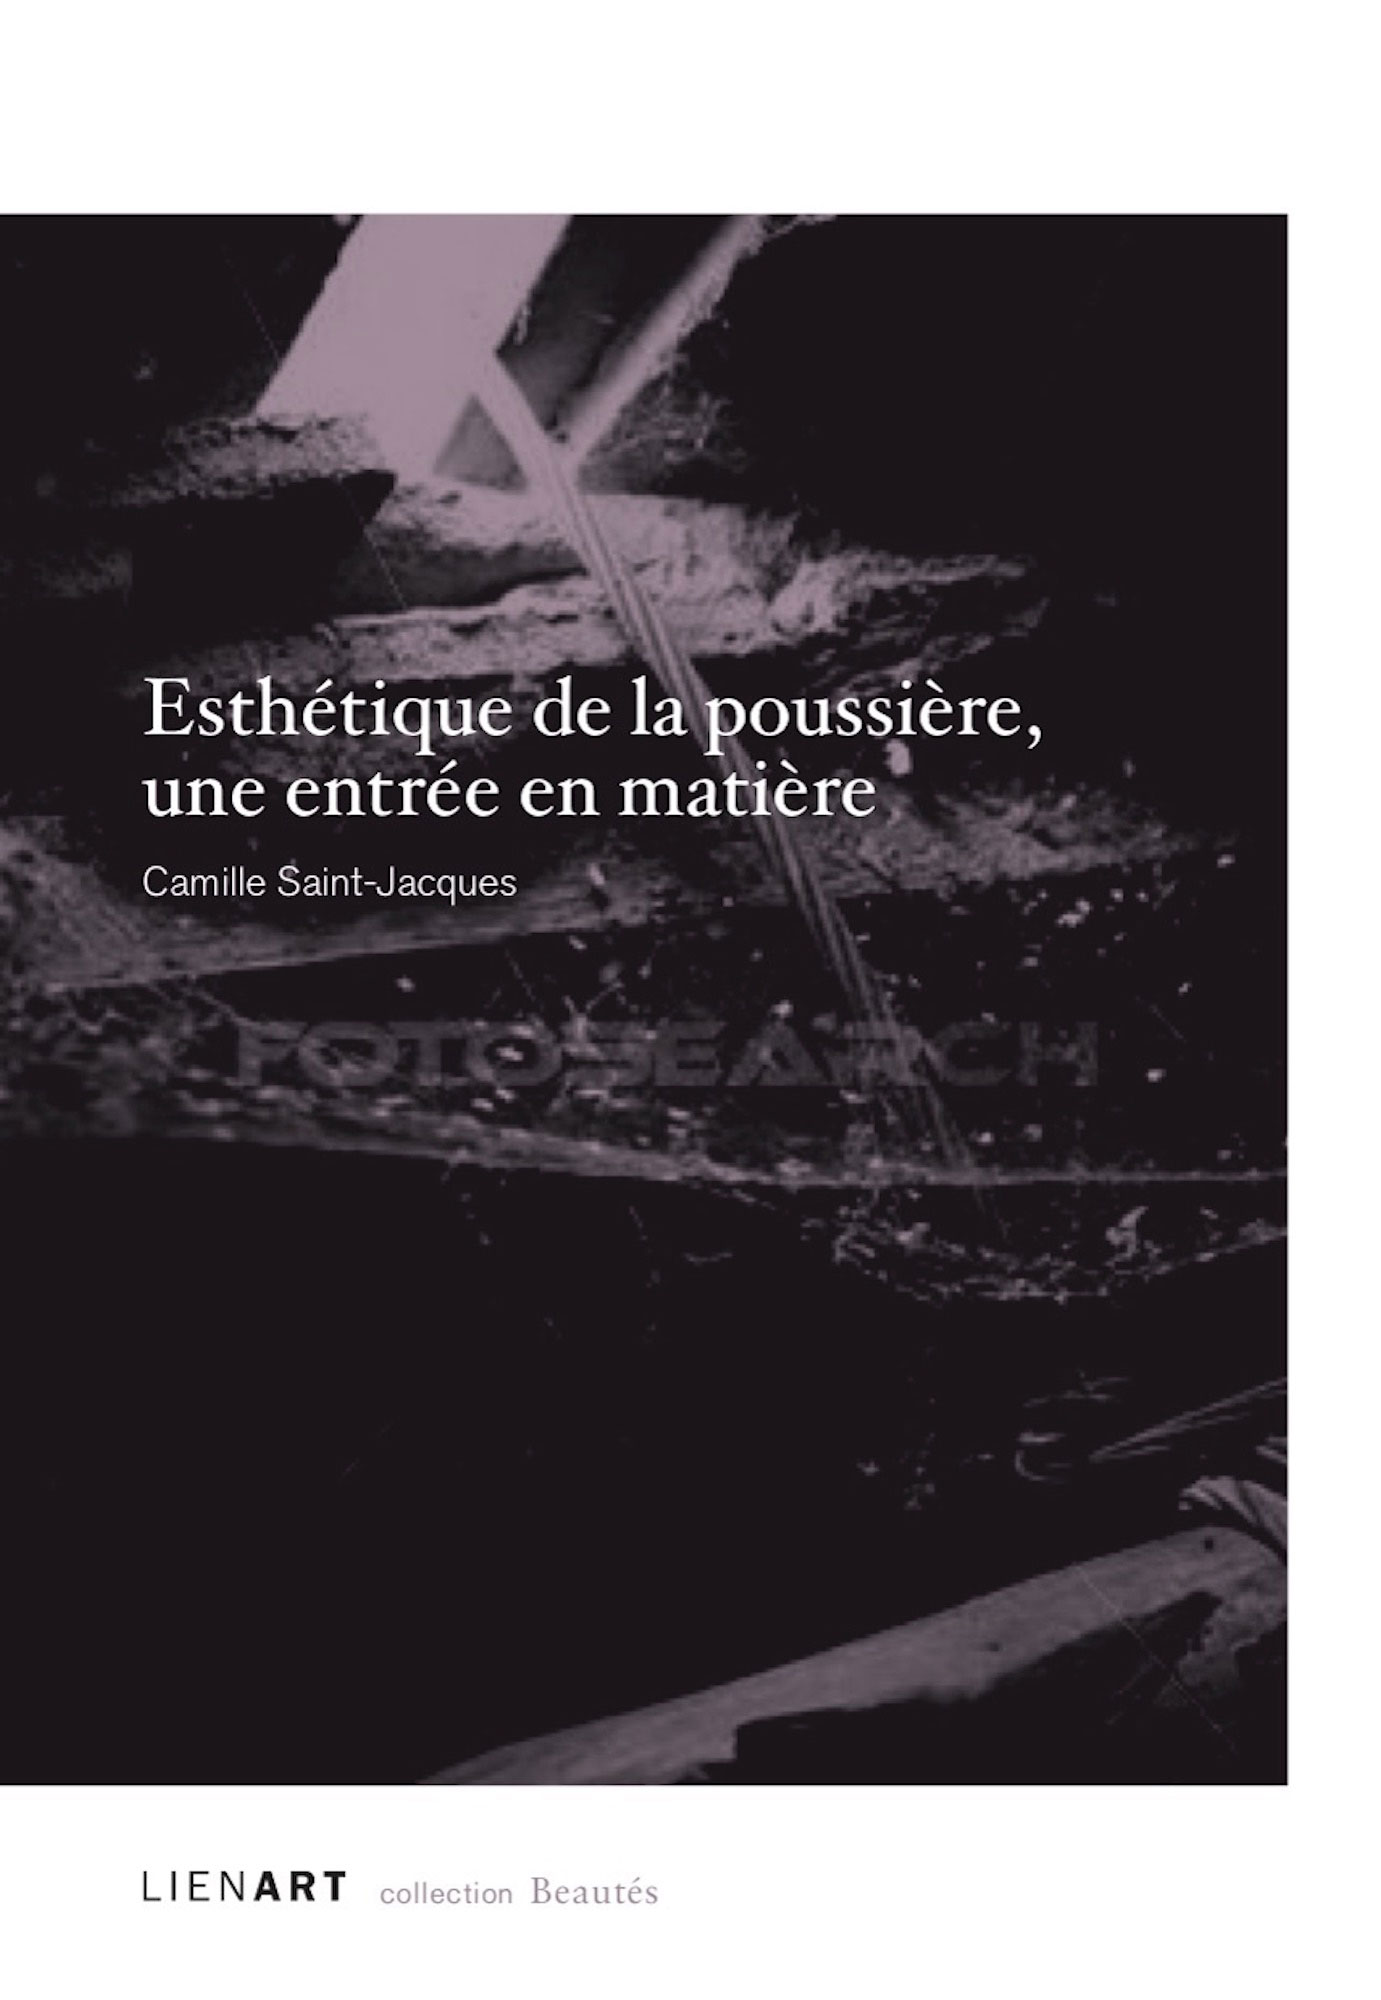 Beautés, Camille Saint-Jacques, Esthétique de la poussière, une entrée en matière, Lienart (couverture)